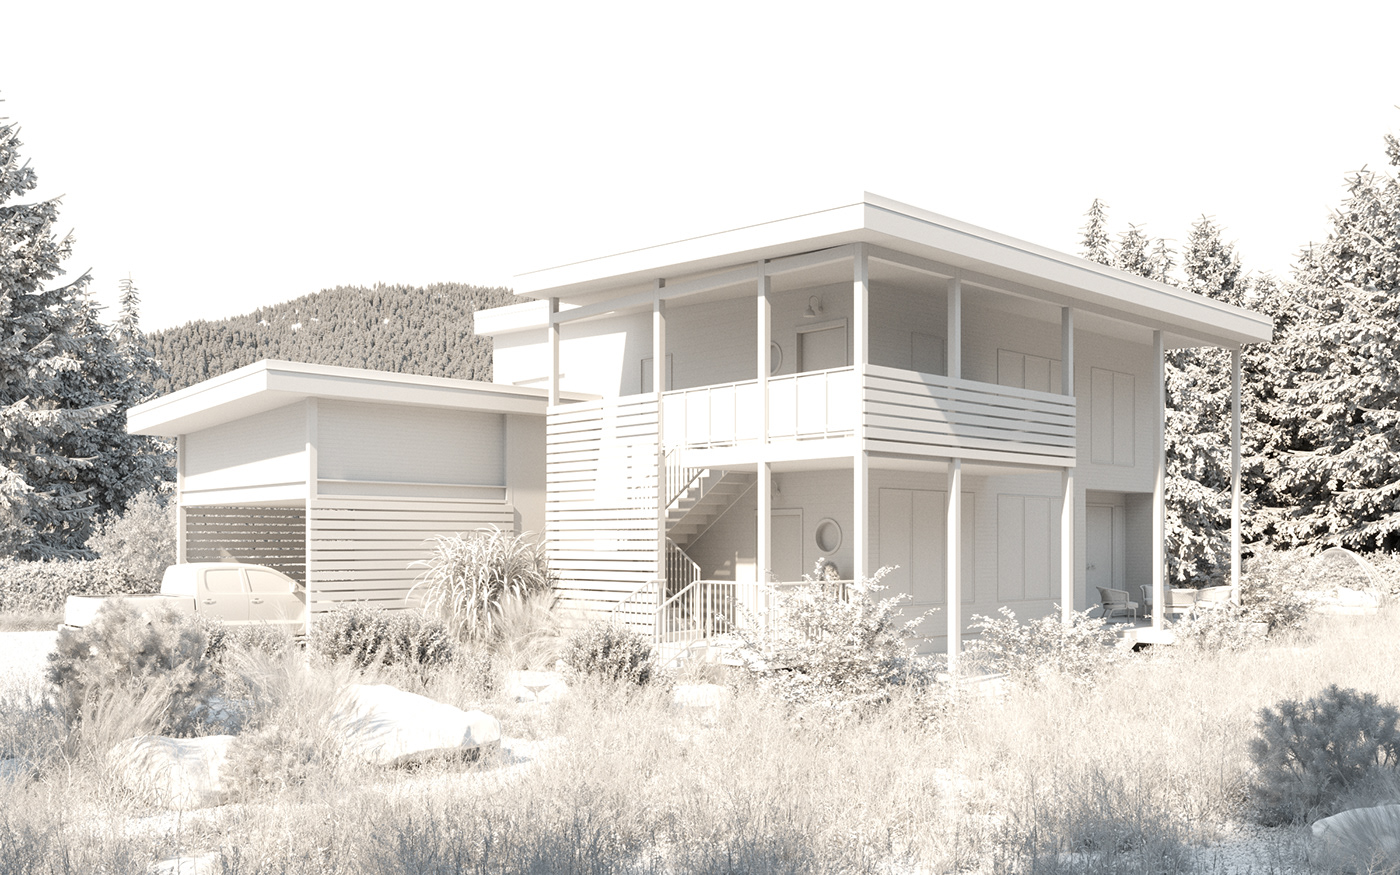 3d Visualisation Render visualiser Landscape Landscape Design duplex cororna render visualisation modern house exterior